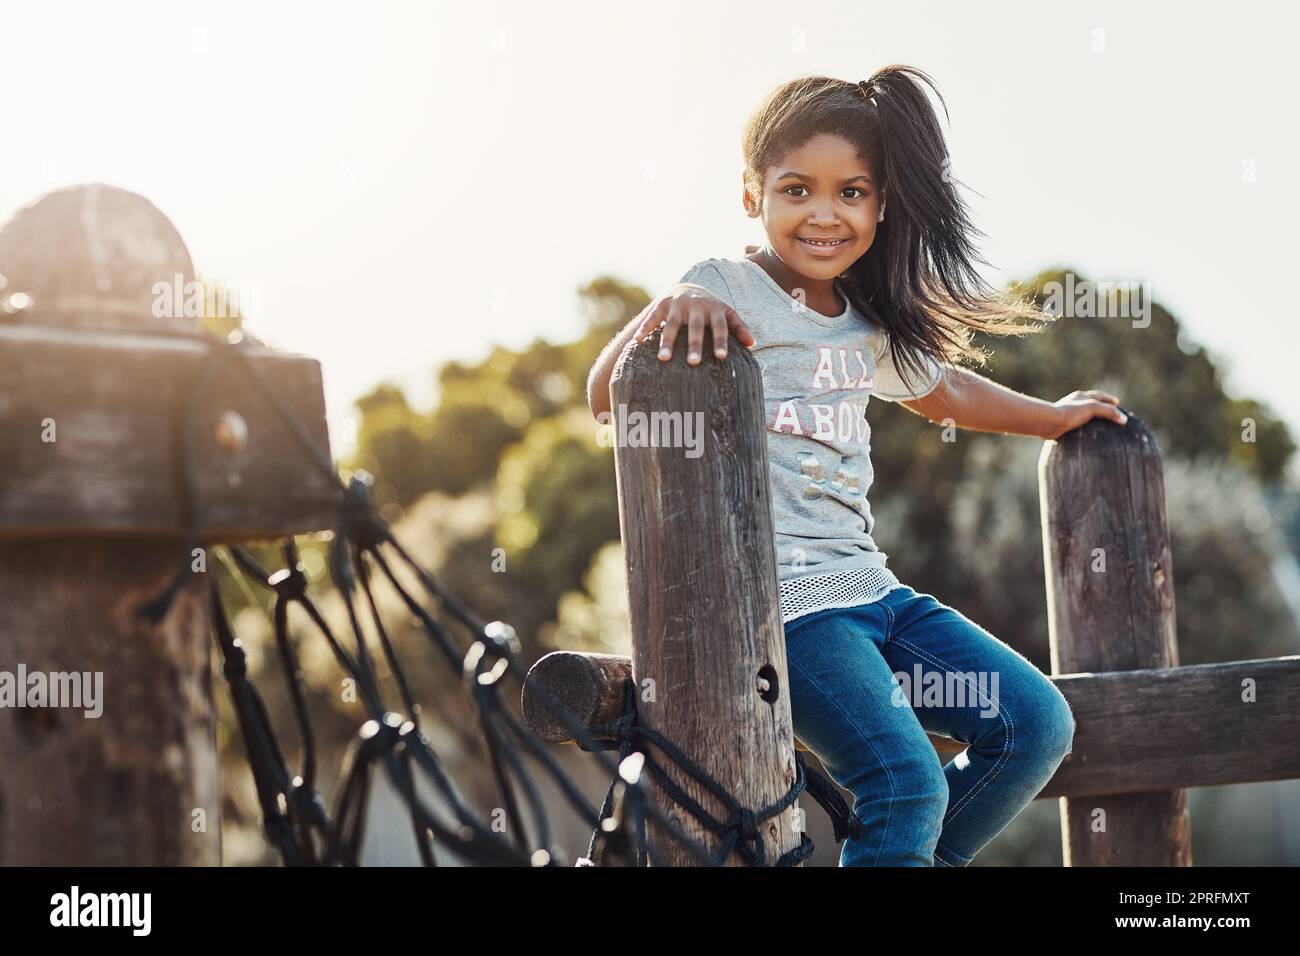 Die Unschuld und Glückseligkeit der Kindheit. Beschnittenes Porträt eines entzückenden kleinen Mädchens, das einige Zeit im Freien genießt. Stockfoto